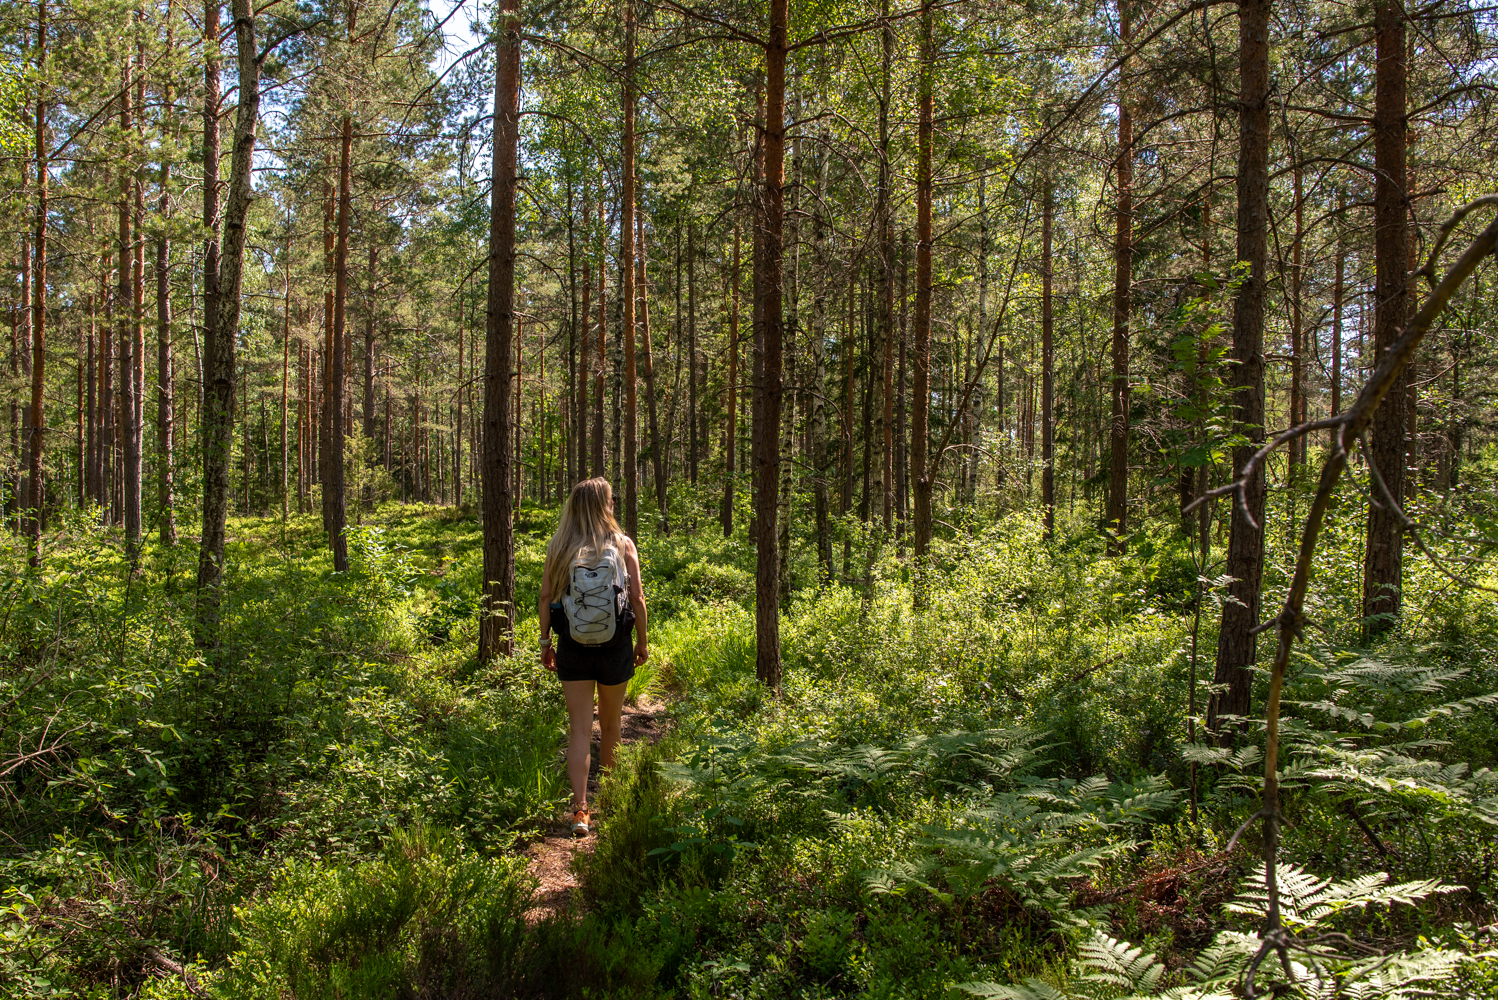 Zweden heeft eindeloze bossen voor mooie wandelingen